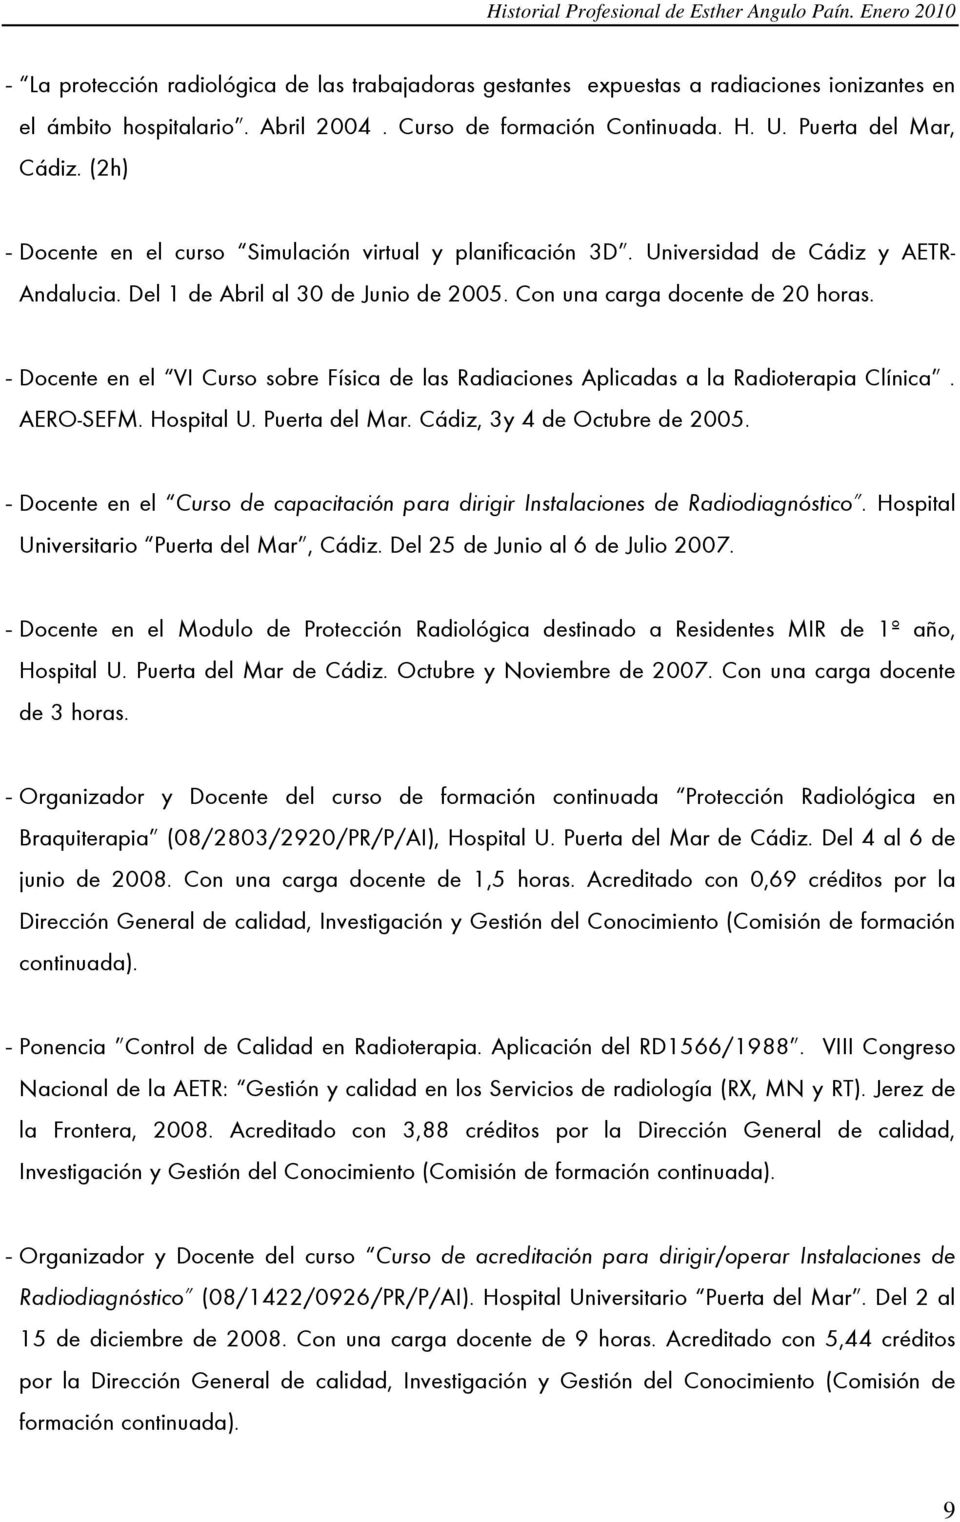 - Docente en el VI Curso sobre Física de las Radiaciones Aplicadas a la Radioterapia Clínica. AERO-SEFM. Hospital U. Puerta del Mar. Cádiz, 3y 4 de Octubre de 2005.